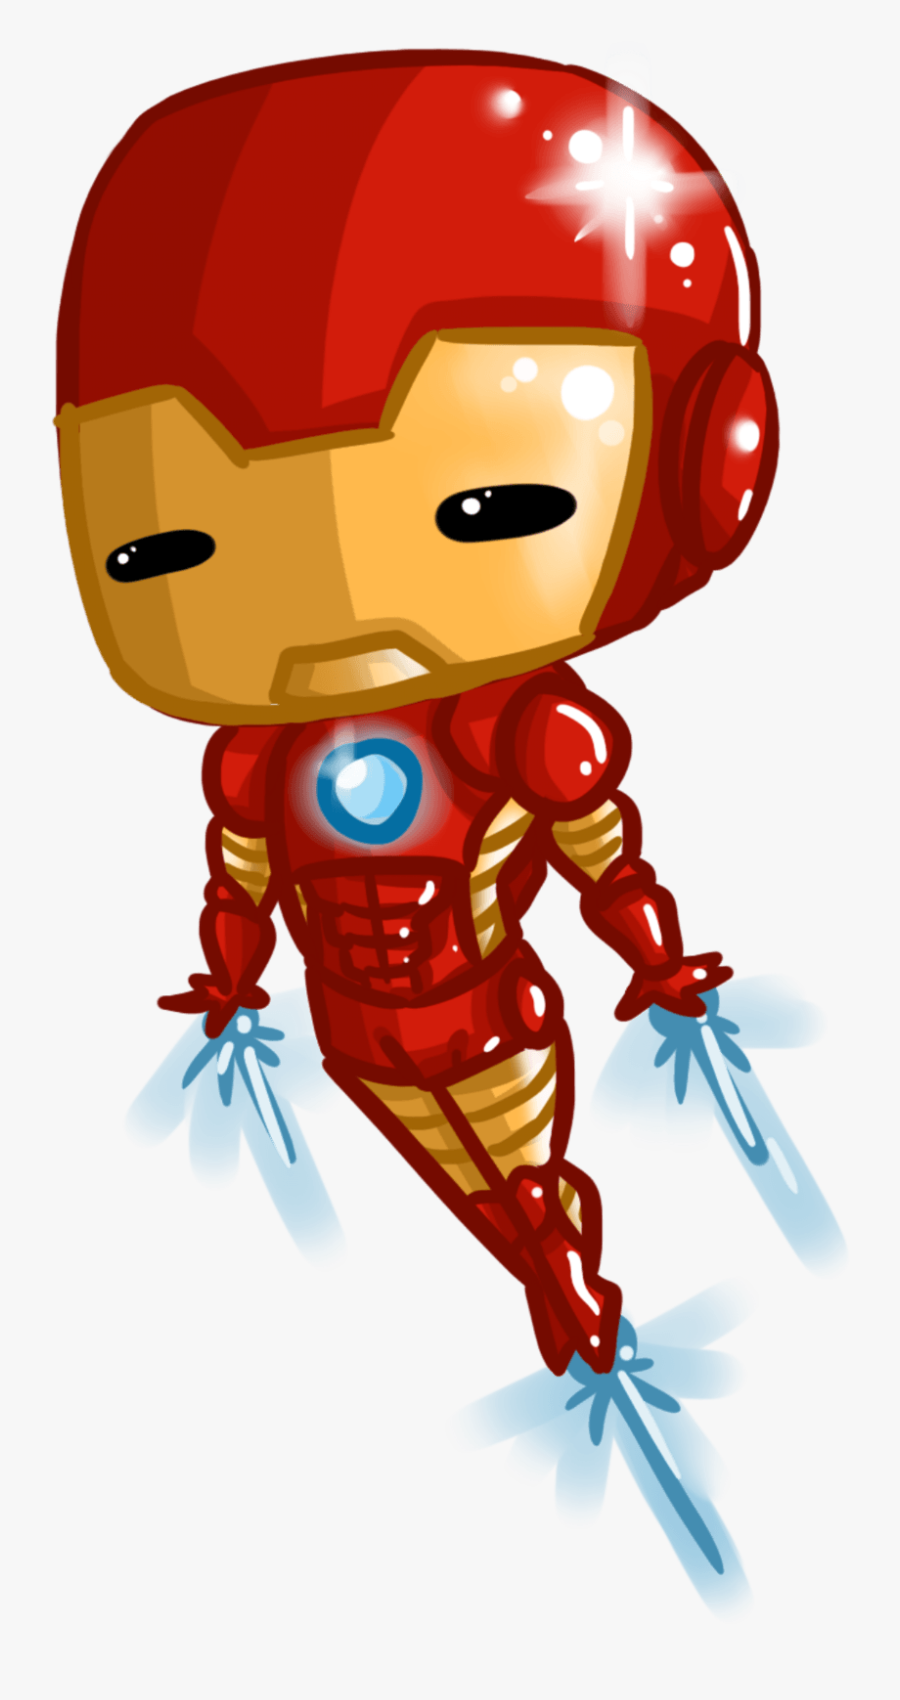 Transparent Man Clipart - Cartoon Iron Man Png, Transparent Clipart